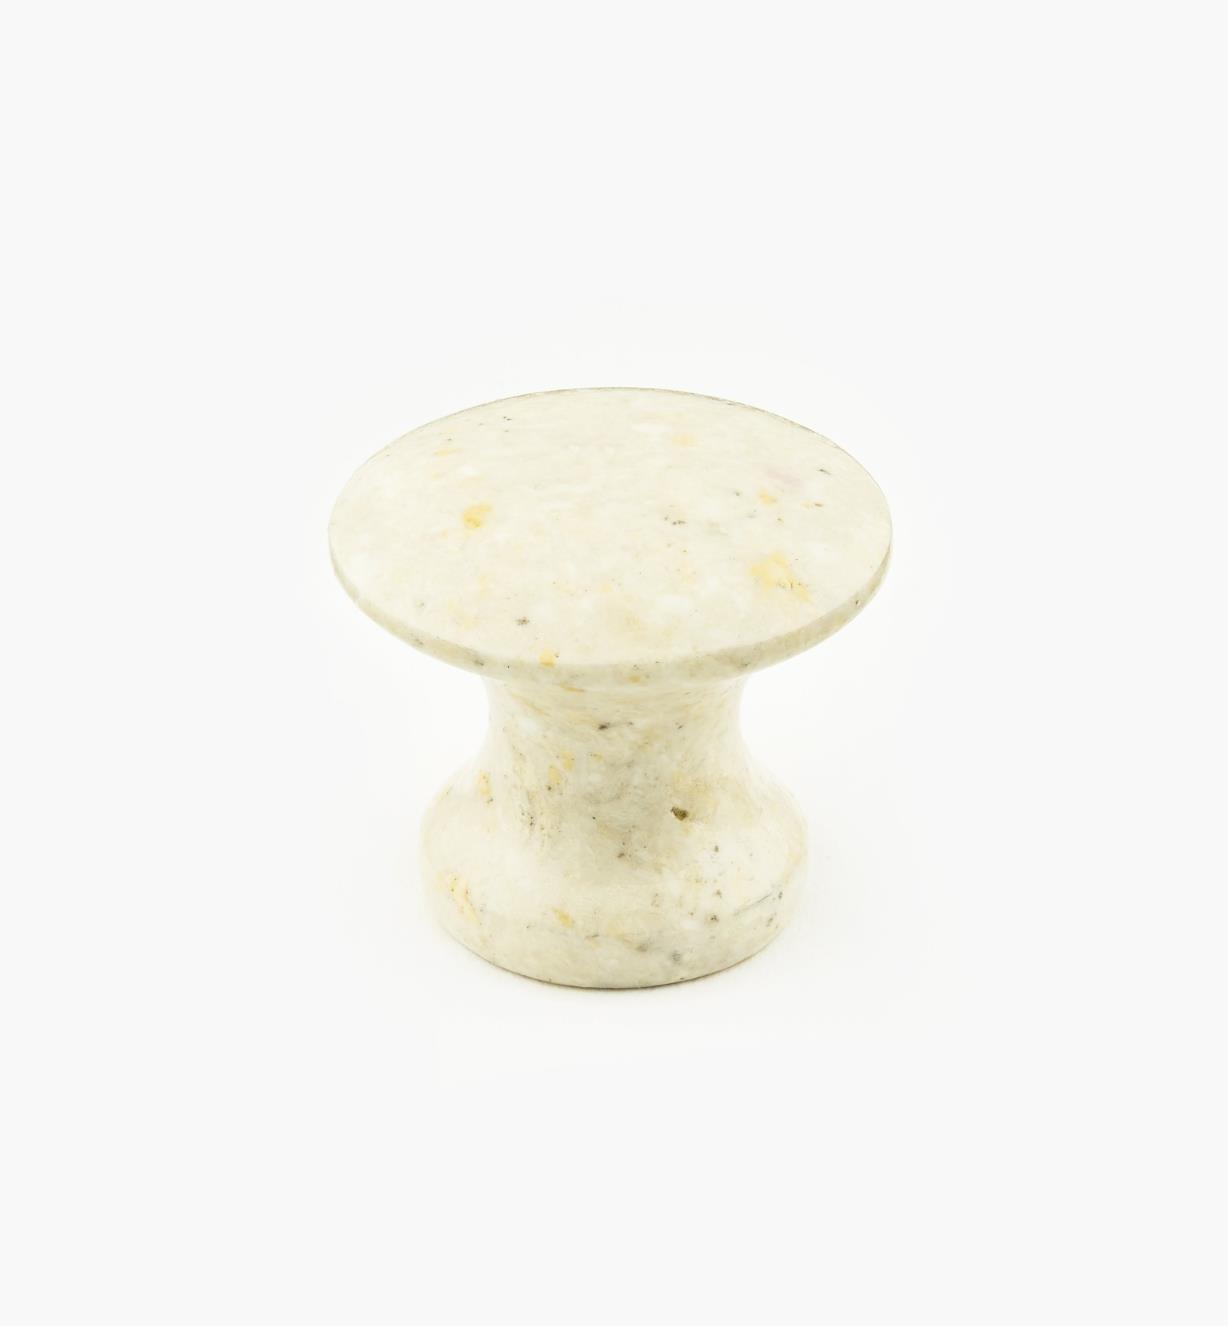 00W4062 - Bouton en marbre, sable, 35 mm x 30 mm